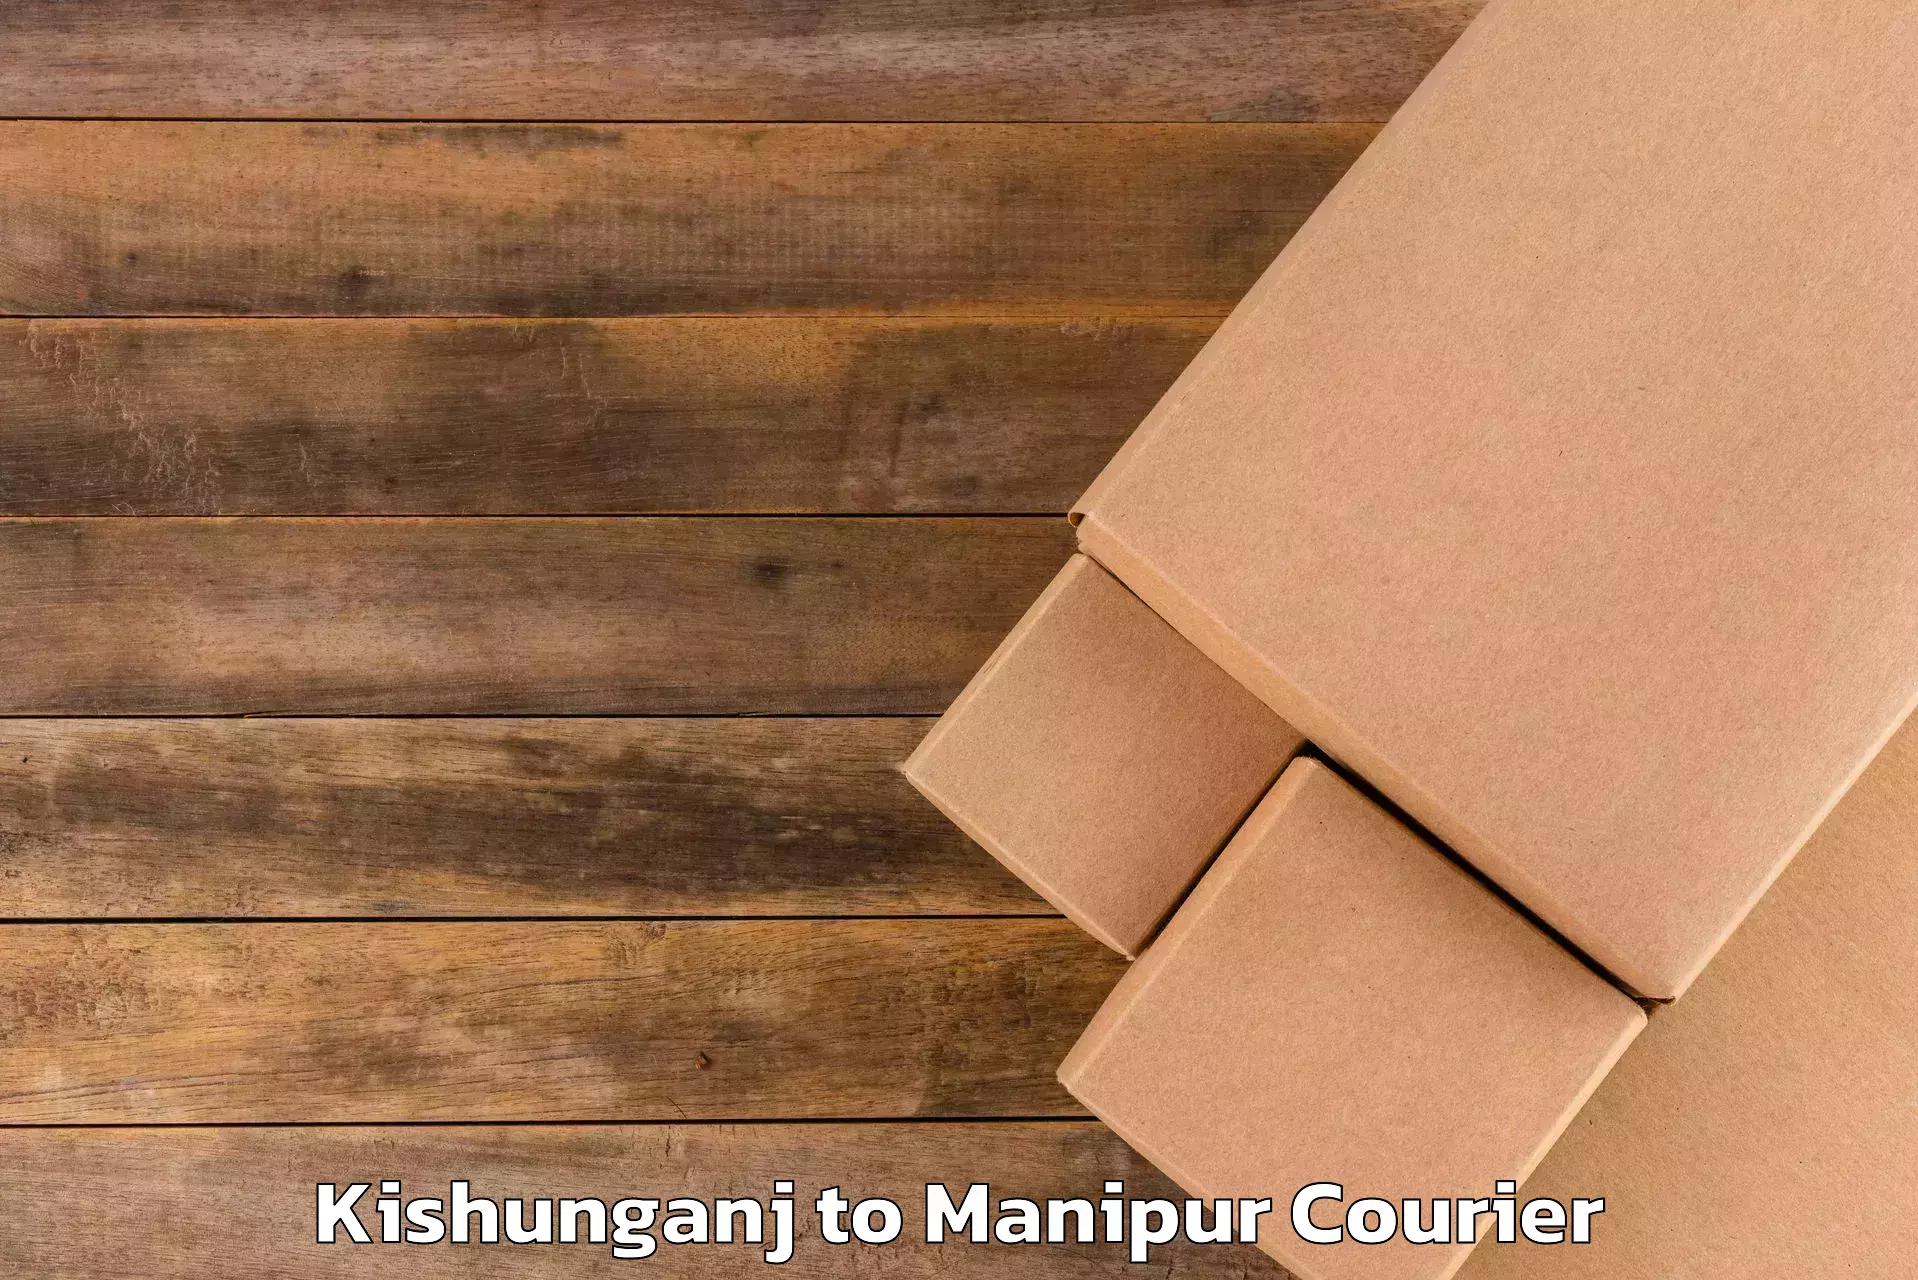 Luggage forwarding service Kishunganj to Chandel